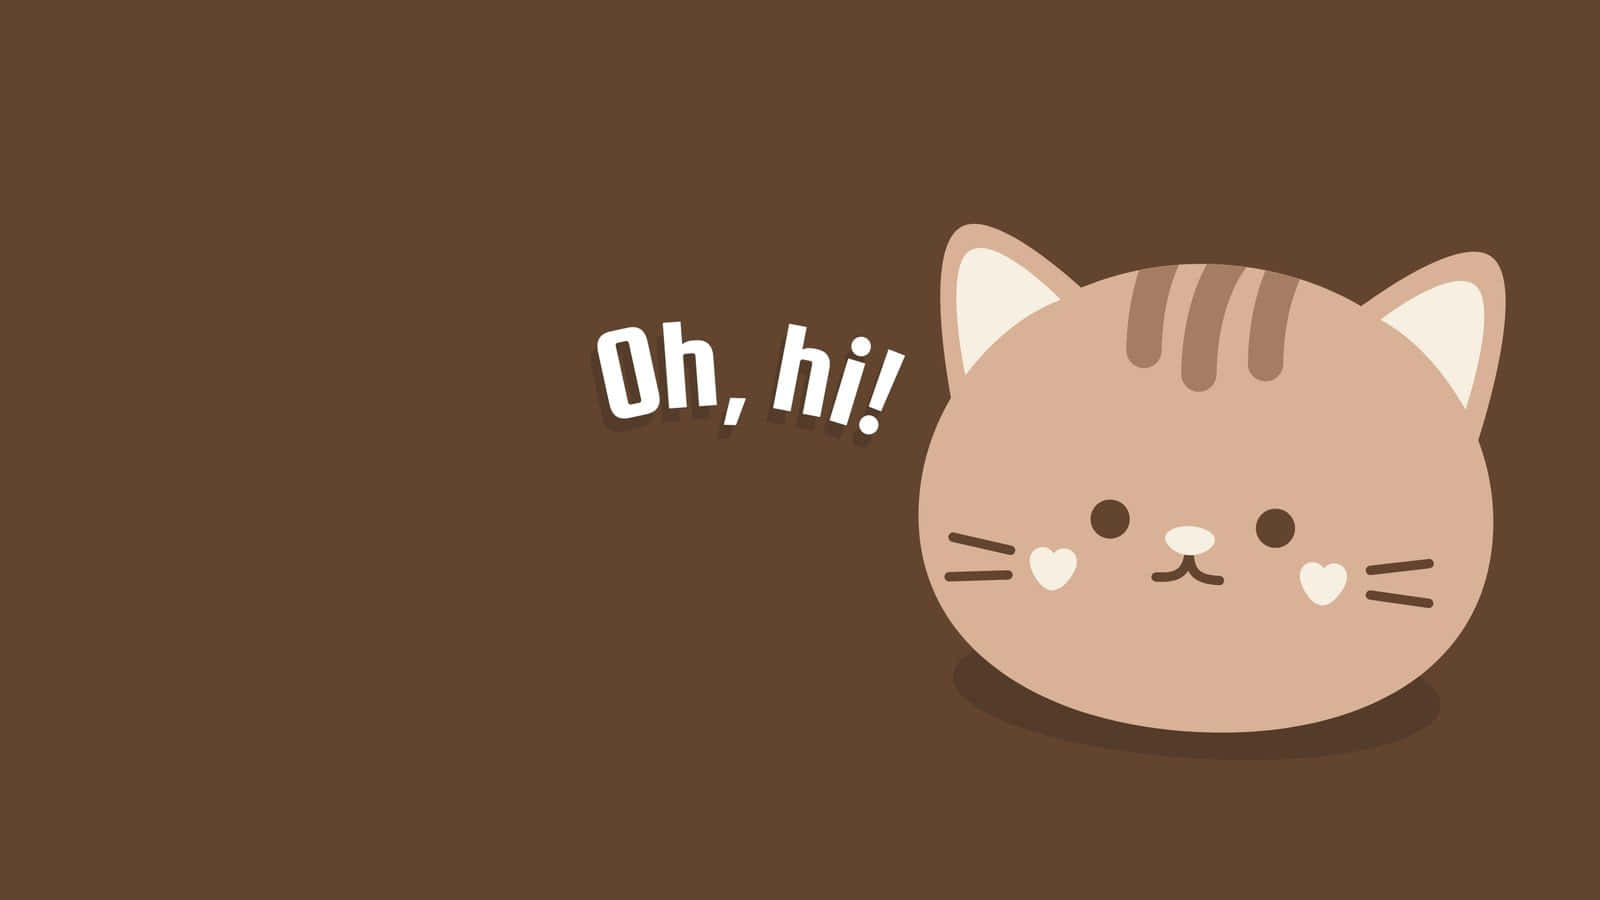 Cute Cat Pc Wallpaper Design Idea Wallpaper